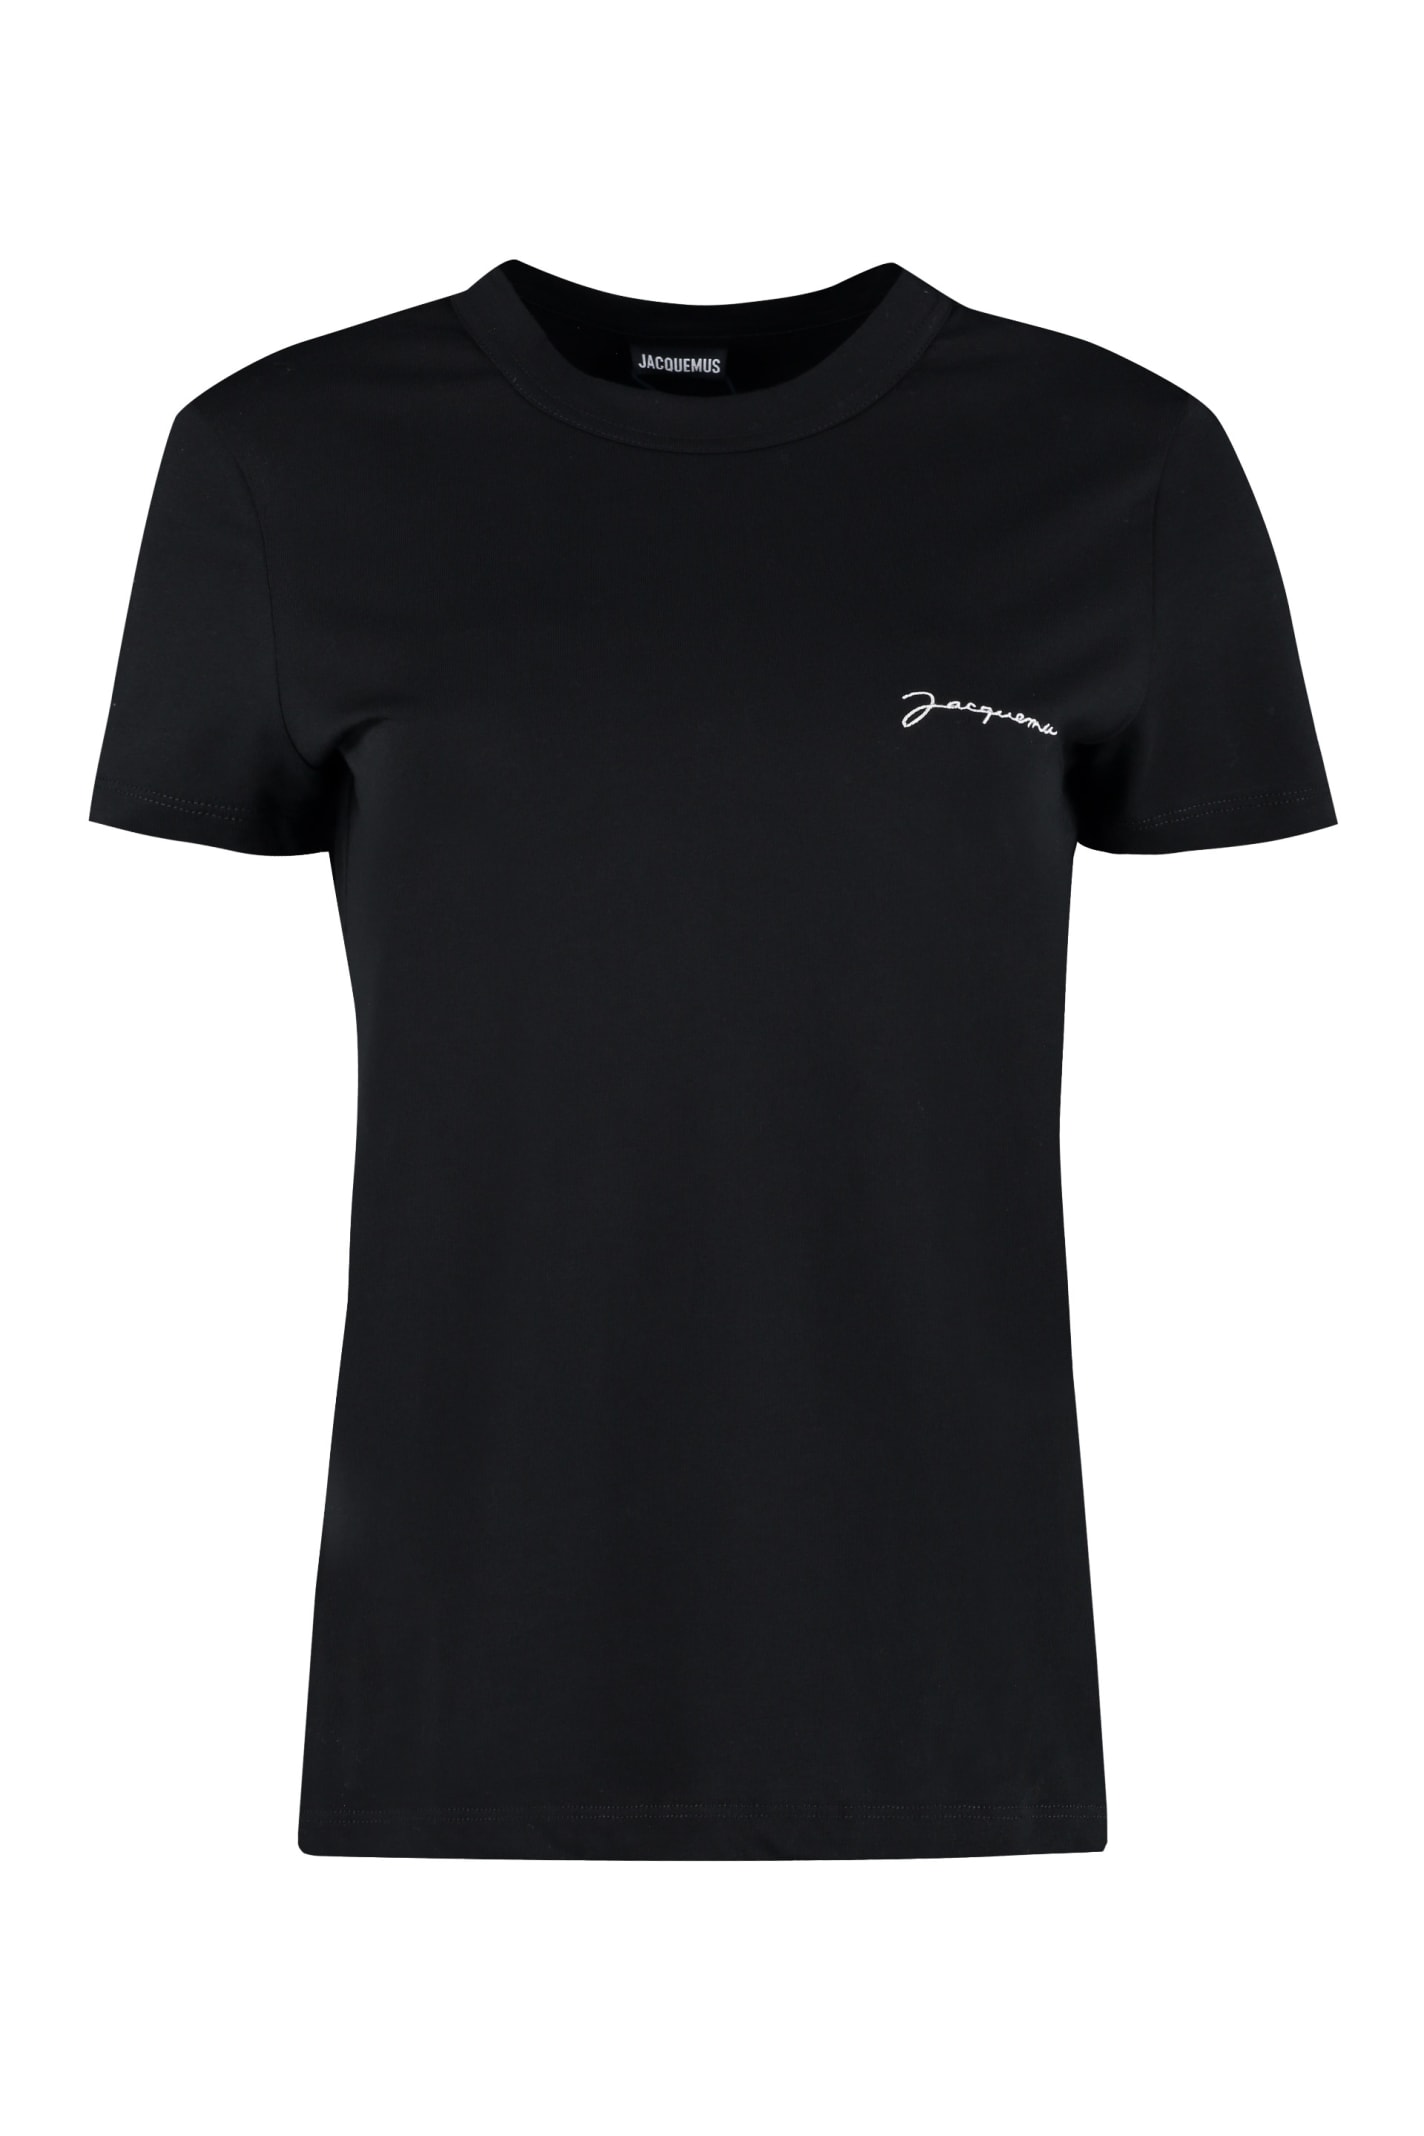 Jacquemus Cotton T-shirt